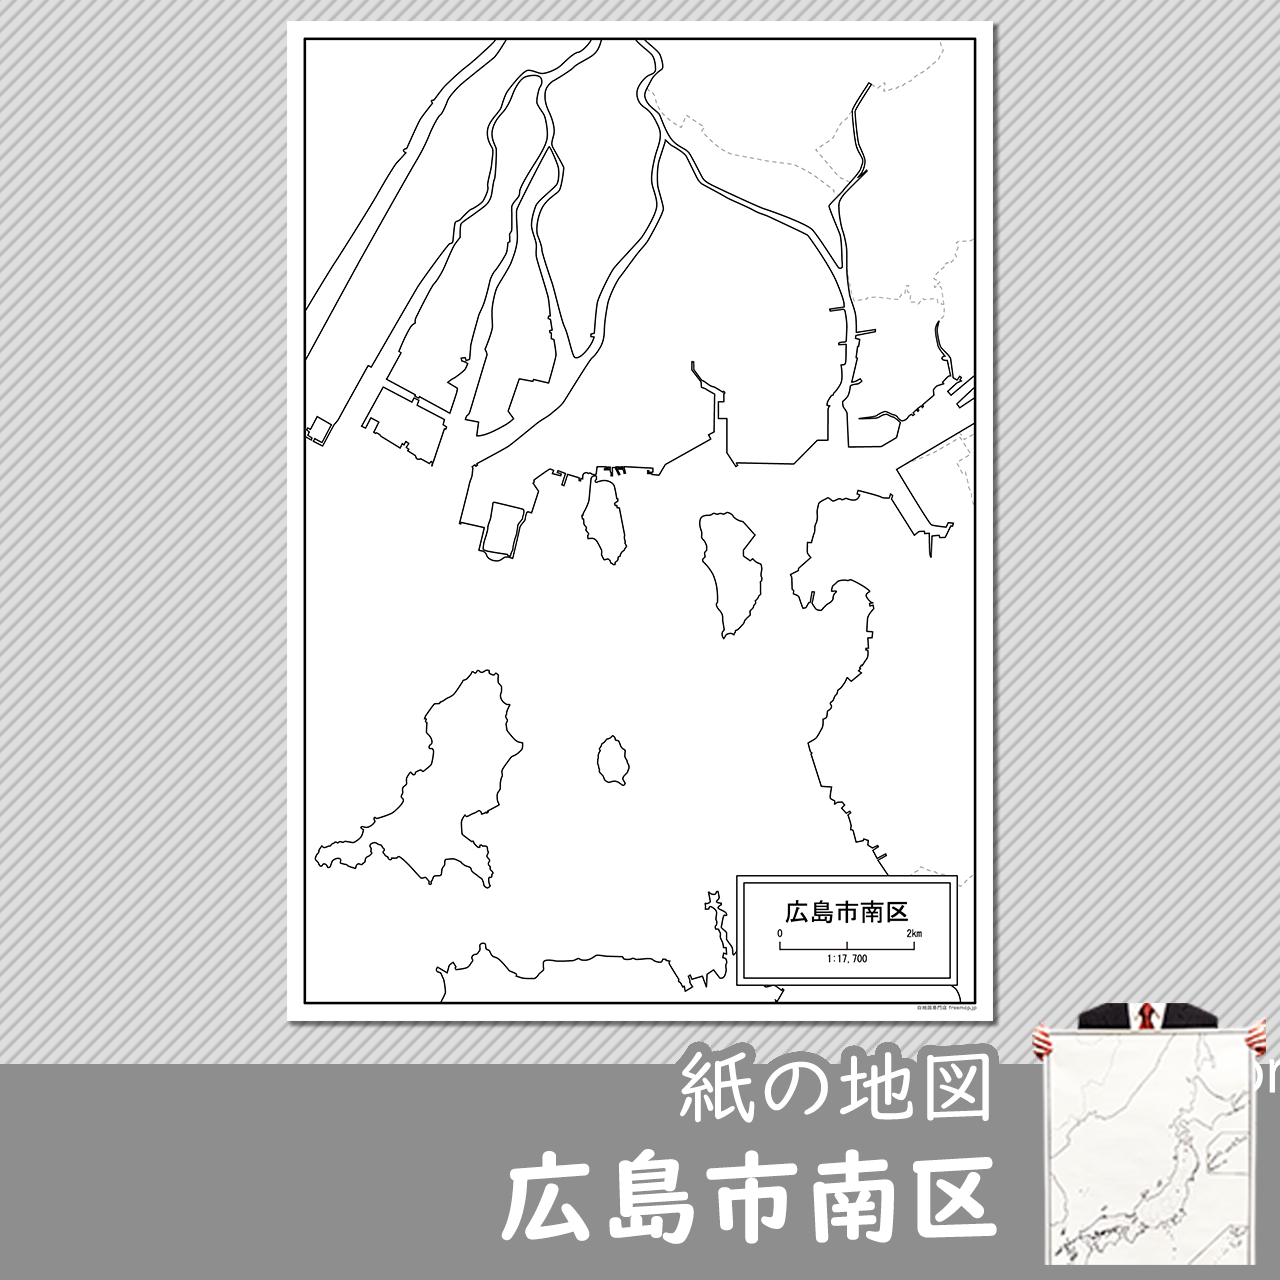 広島市南区の紙の白地図のサムネイル